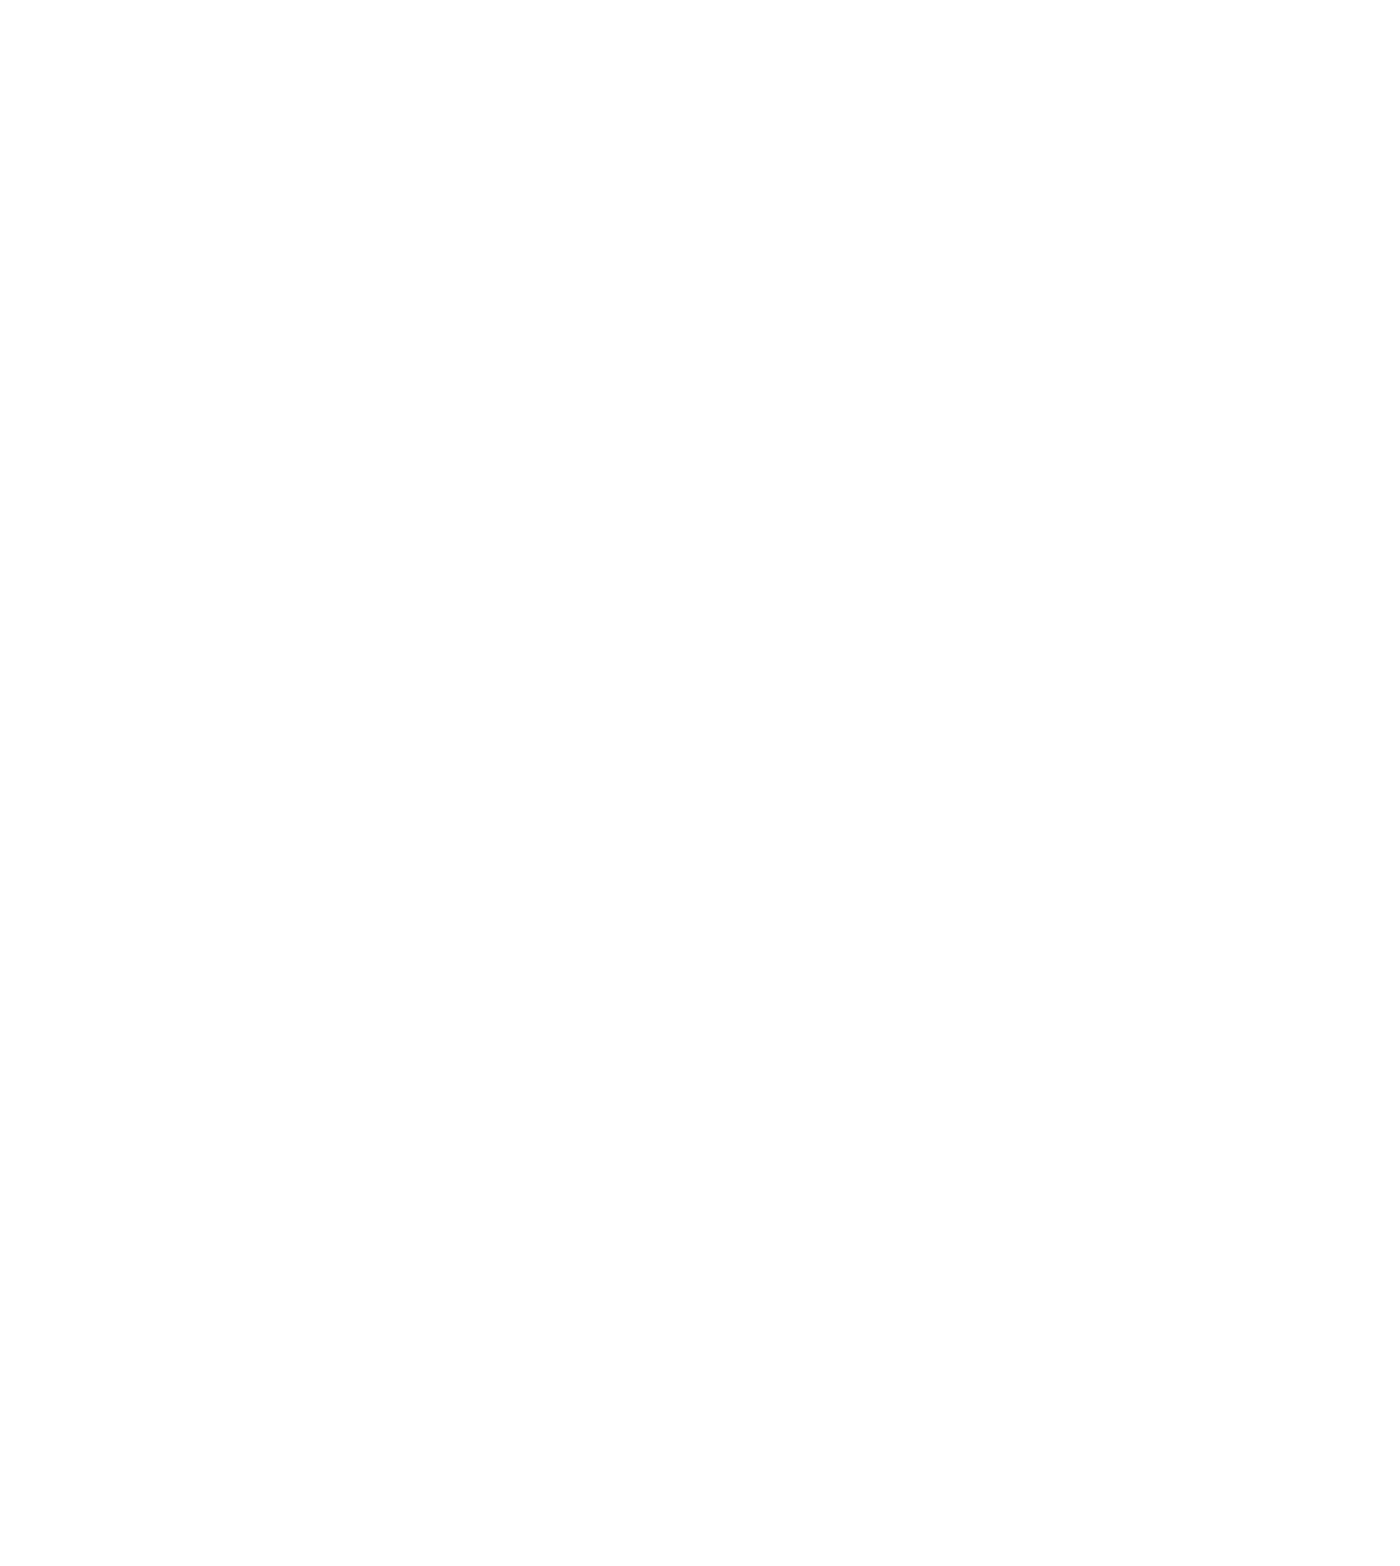 Ontex Group logo pour fonds sombres (PNG transparent)